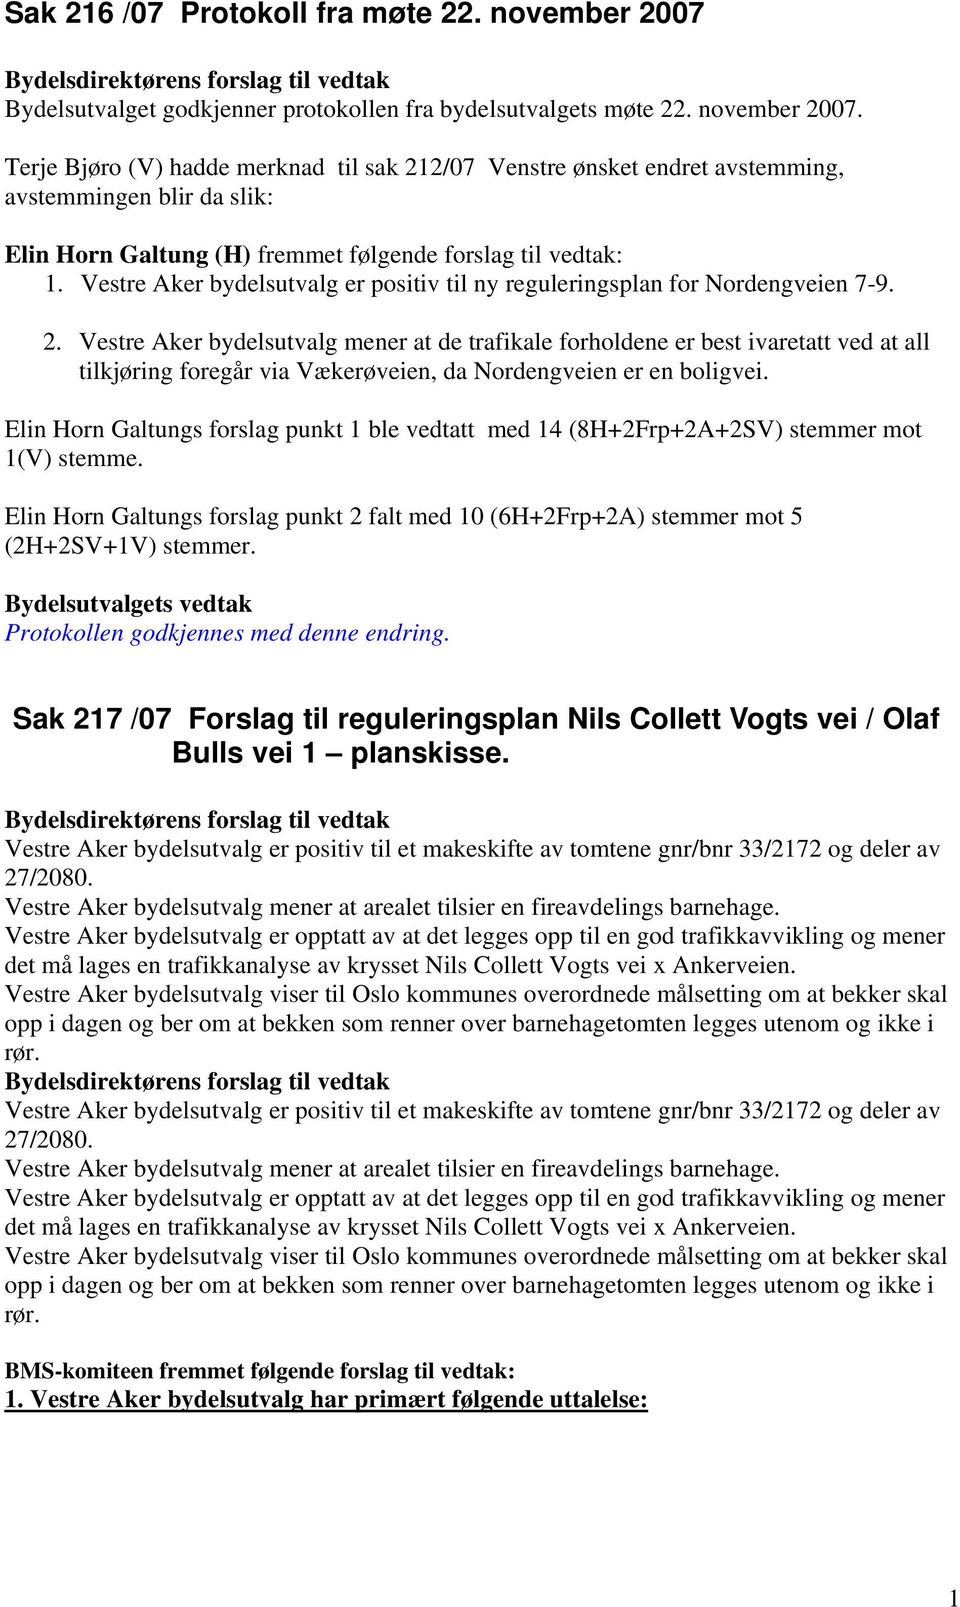 Terje Bjøro (V) hadde merknad til sak 212/07 Venstre ønsket endret avstemming, avstemmingen blir da slik: Elin Horn Galtung (H) fremmet følgende forslag til vedtak: 1.